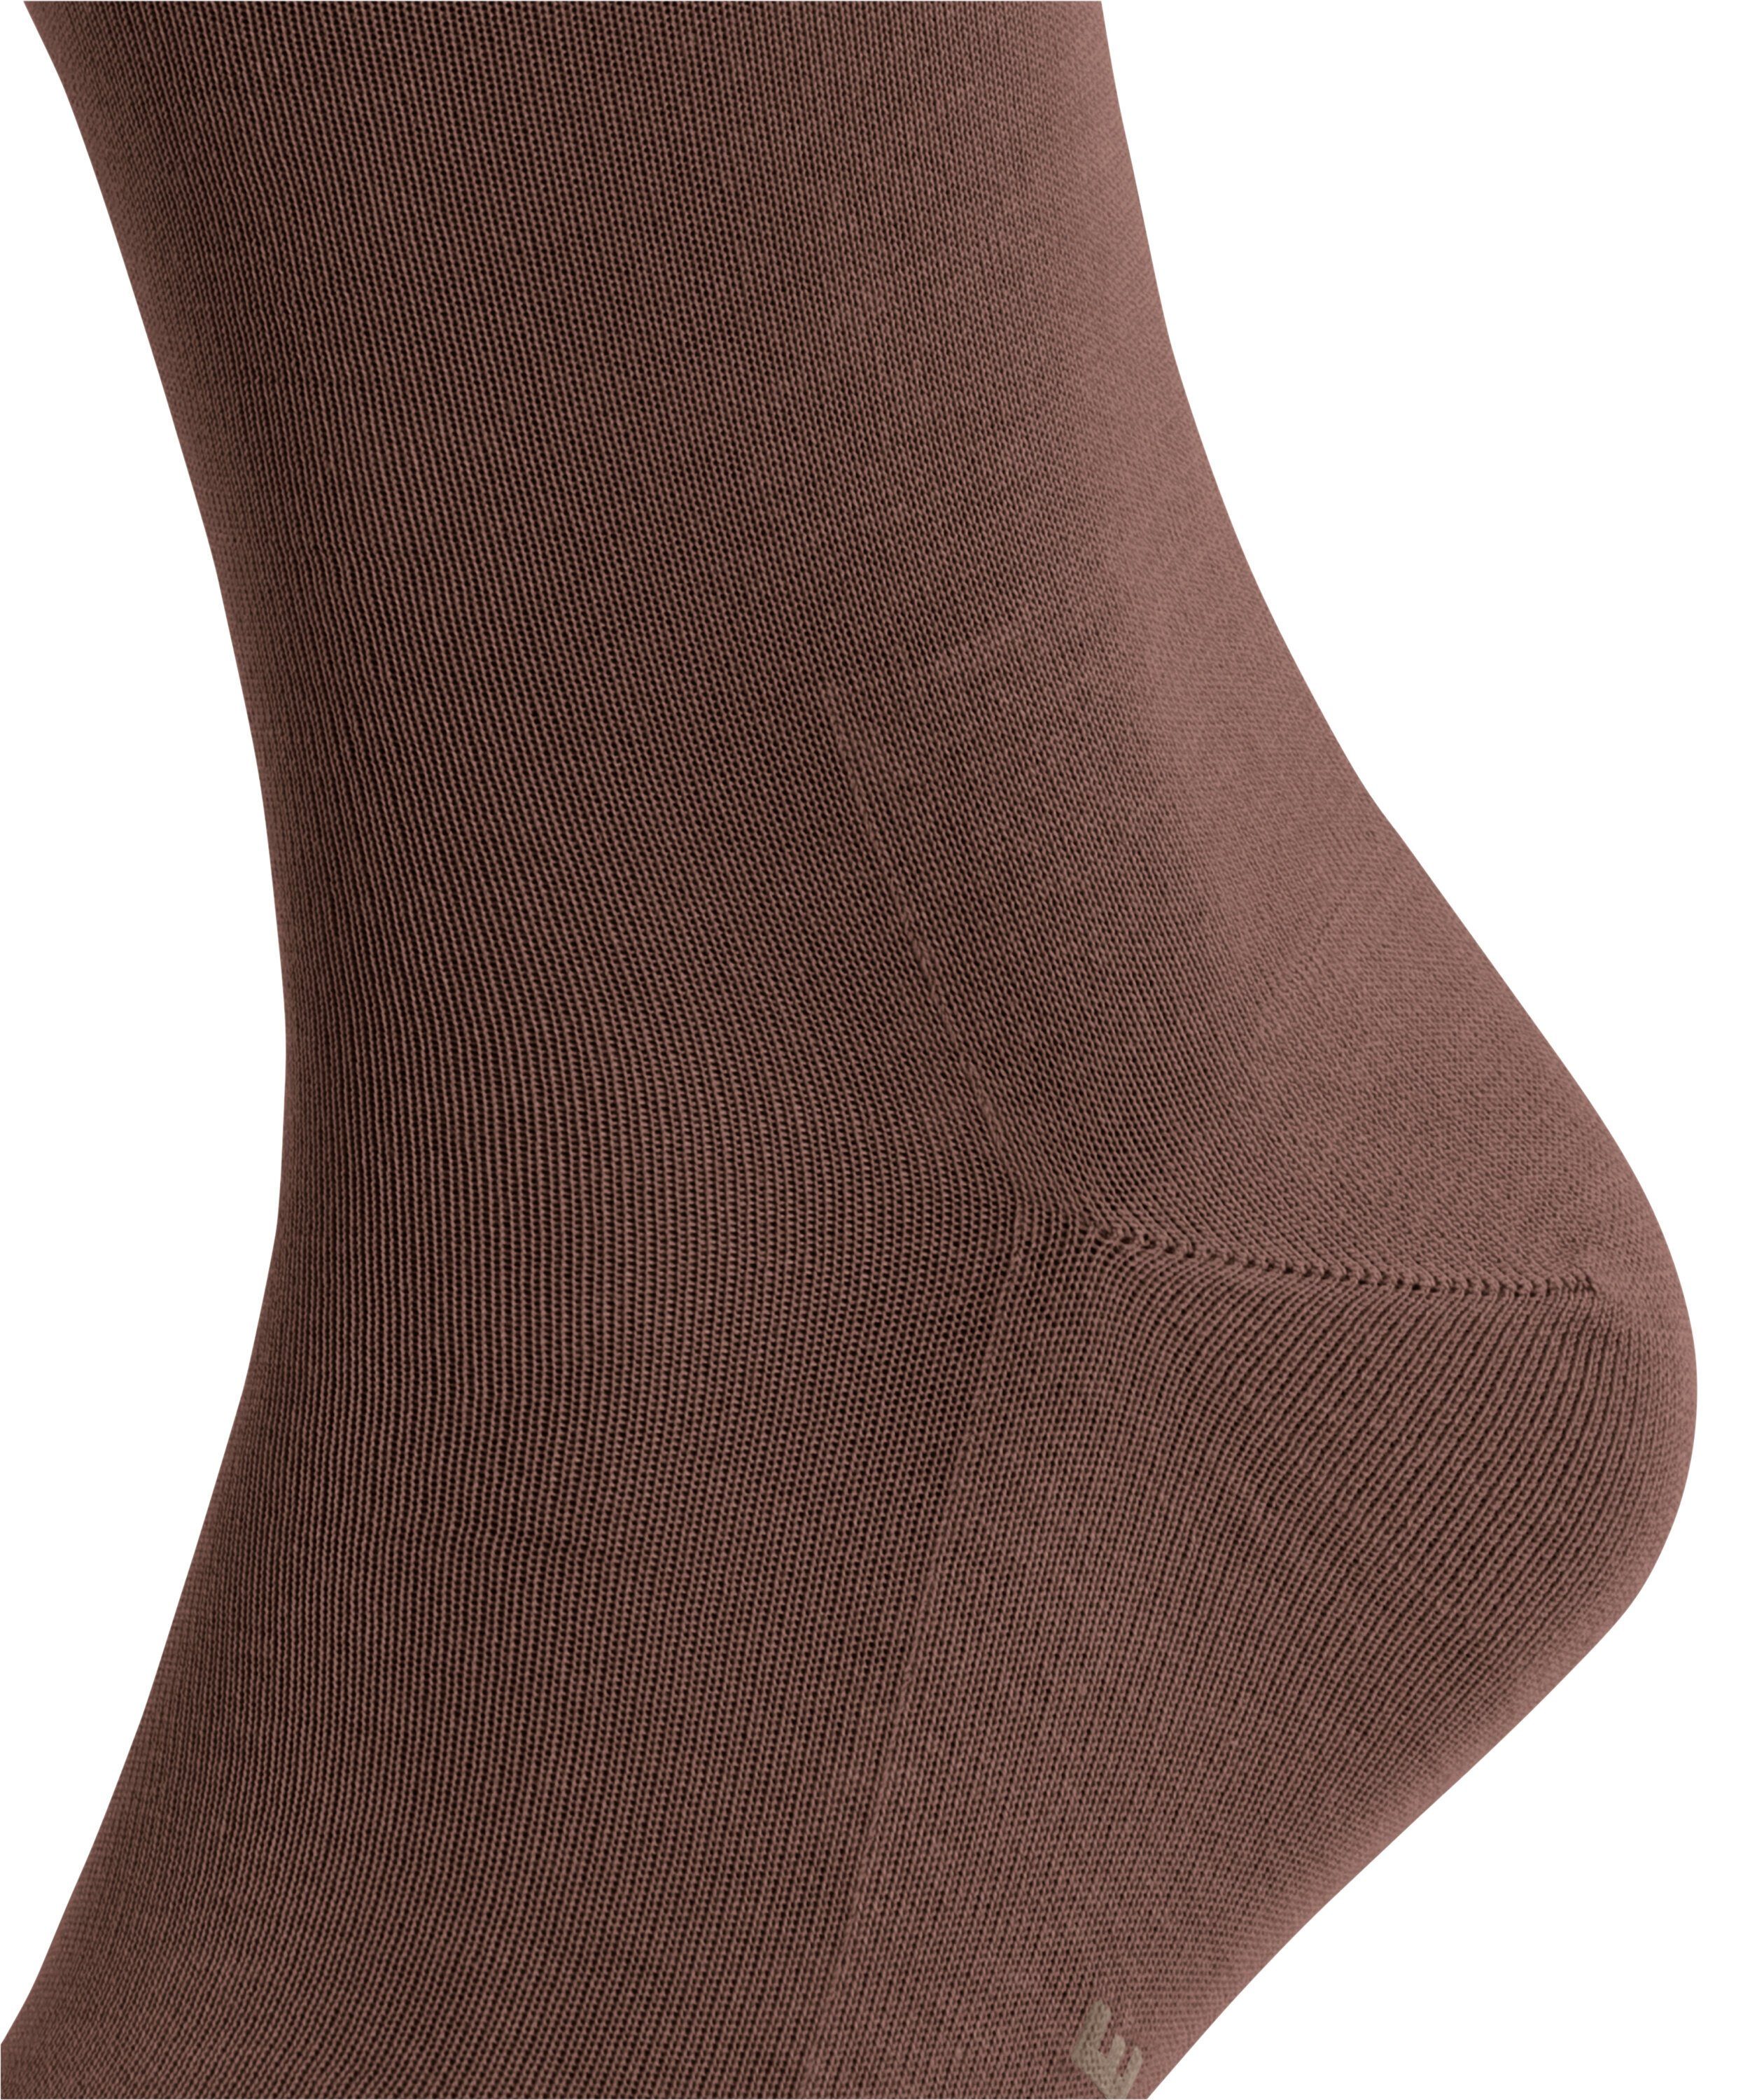 FALKE Socken Tiago (1-Paar) maroon (5108)